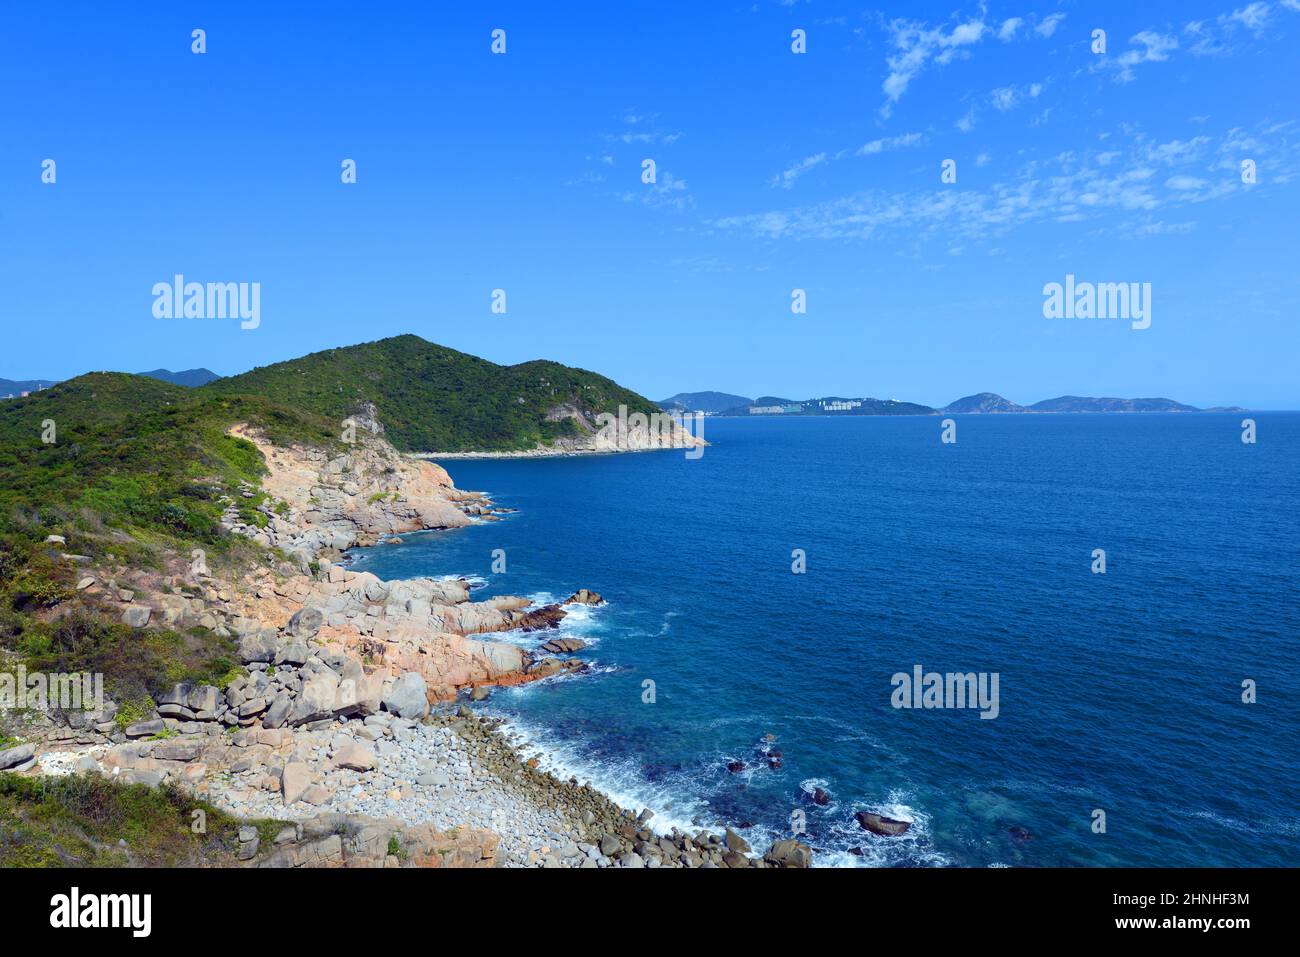 La splendida costa rocciosa nella parte meridionale dell'isola di Lamma a Hong Kong. Foto Stock